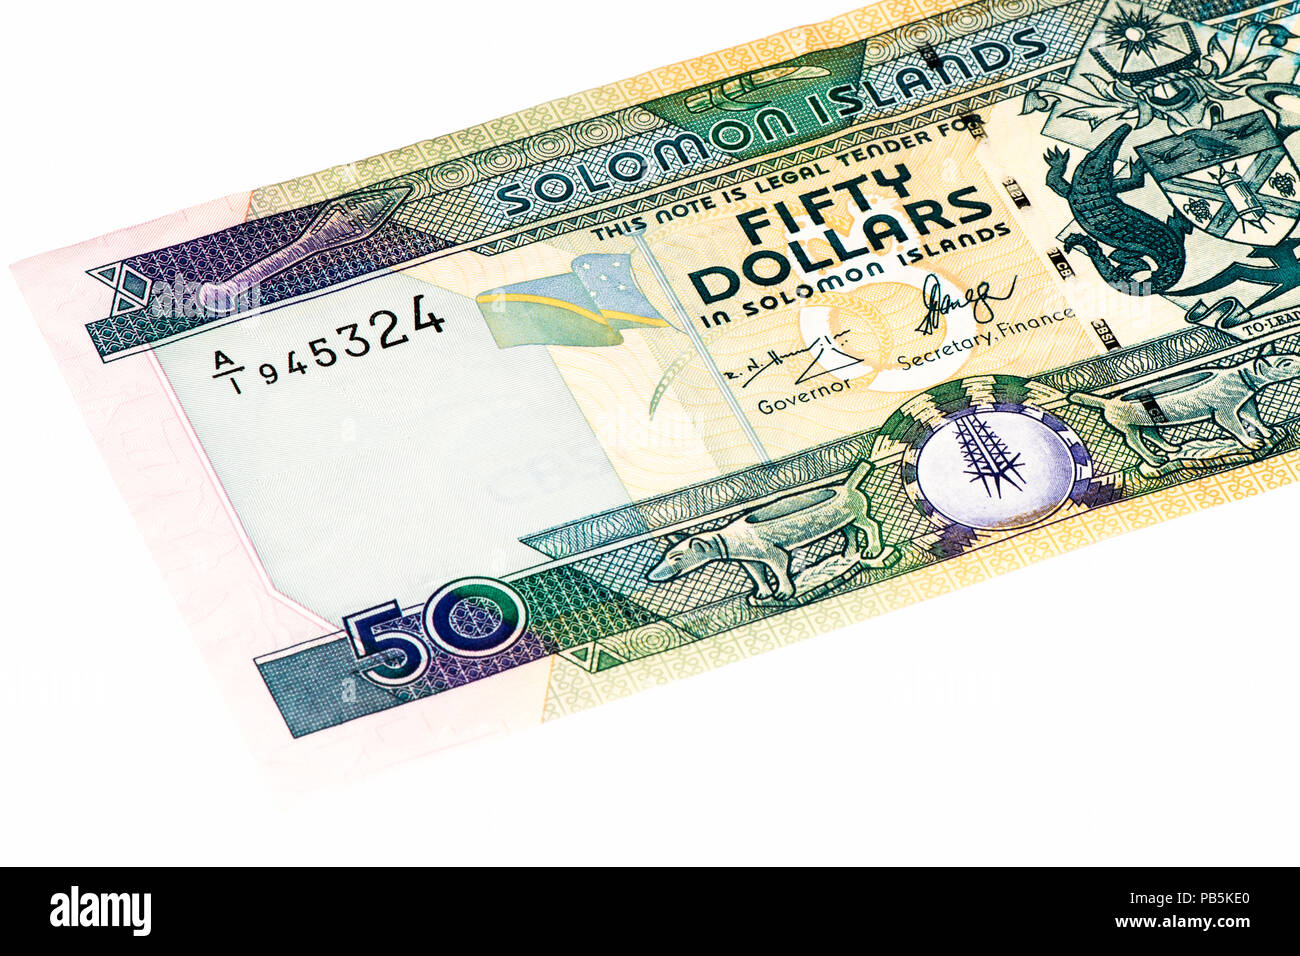 50 Salomonen dollar Bank Note. Salomonen Dollar ist die nationale Währung  Stockfotografie - Alamy